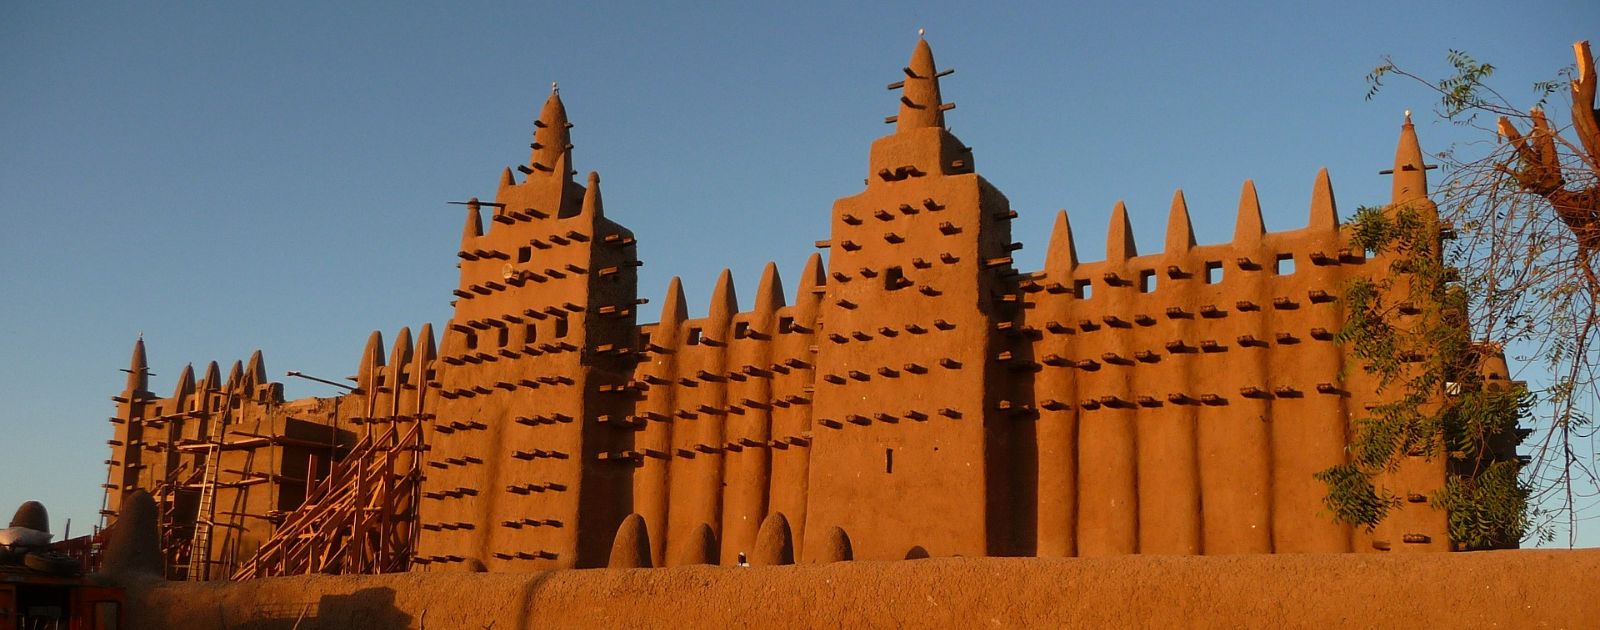 life scene in Mali